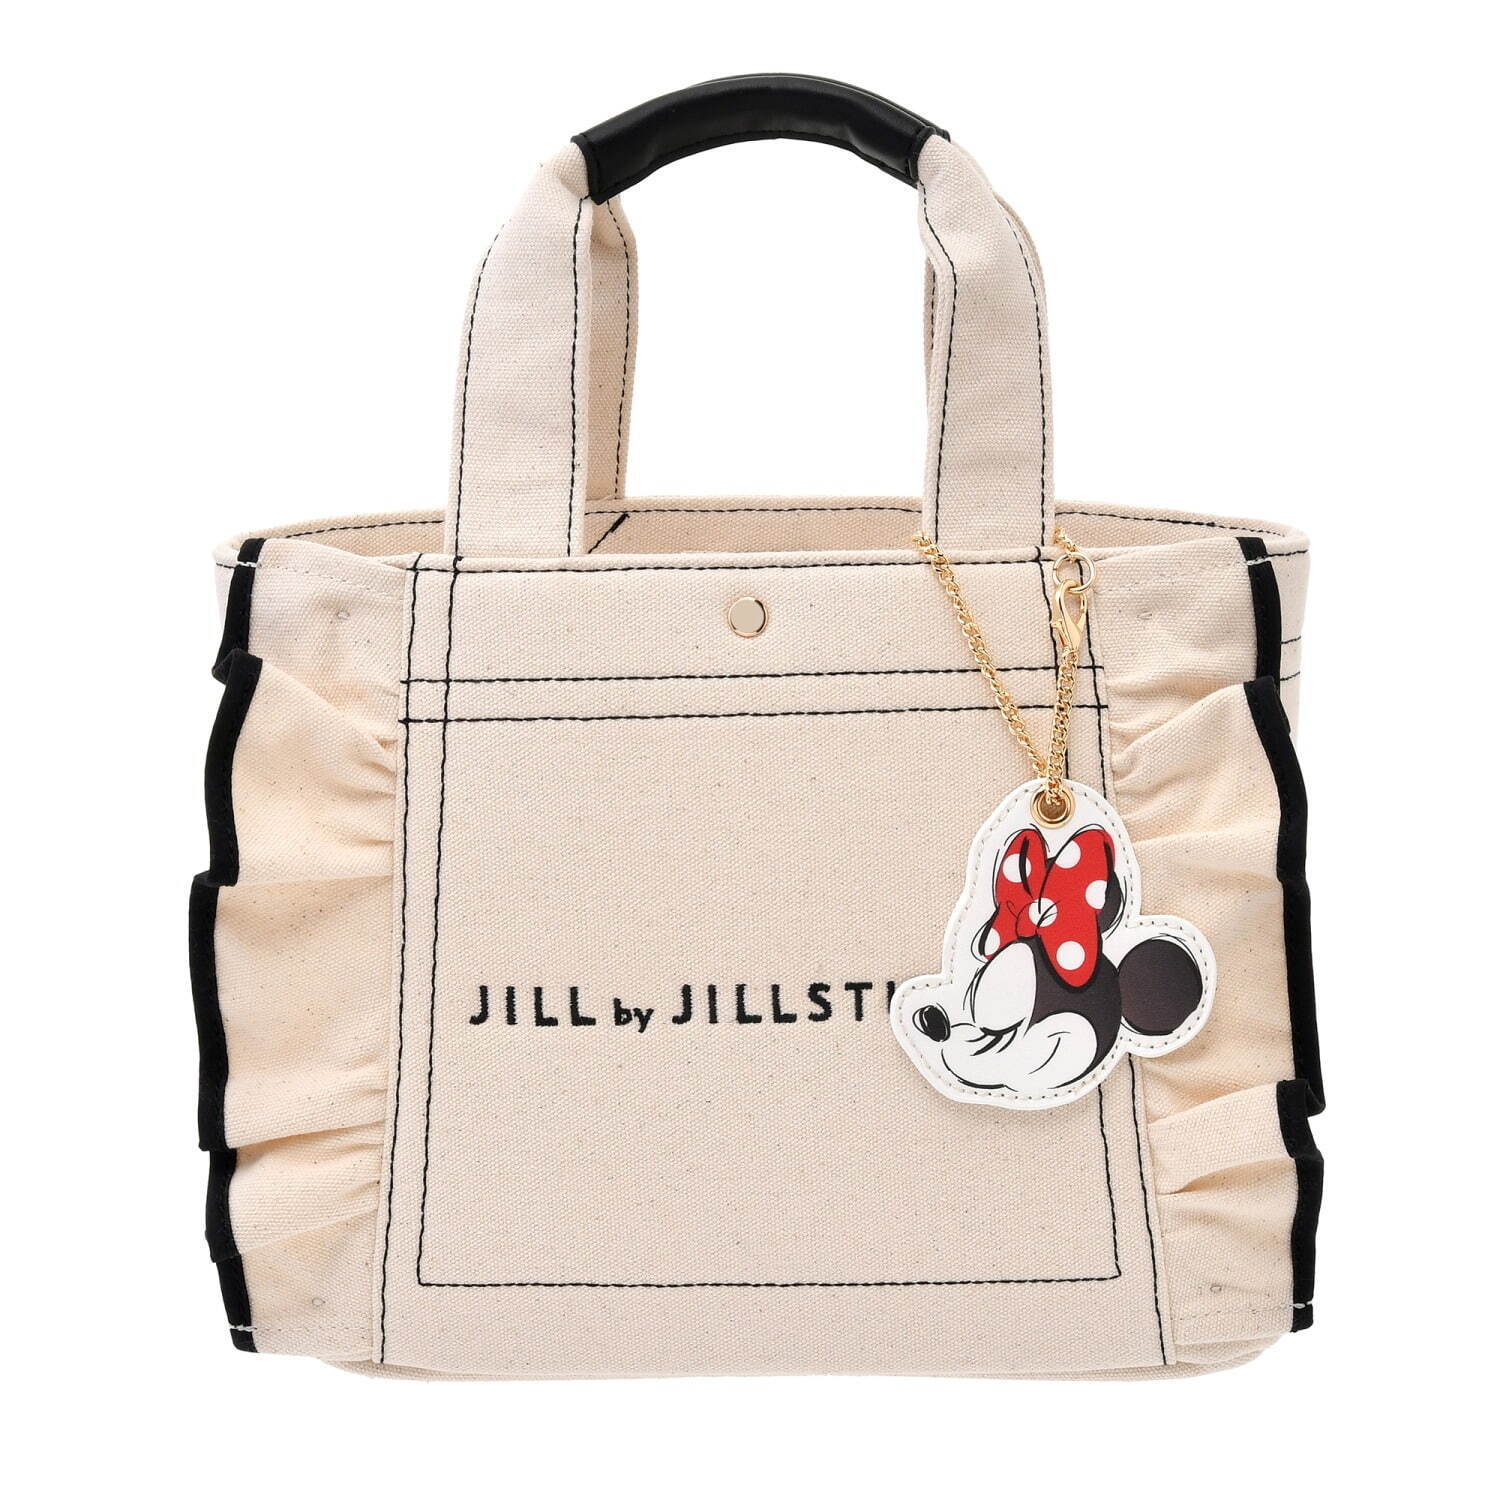 ジル by ジルスチュアート人気バッグが「ミニー」デザインに、リボン ...